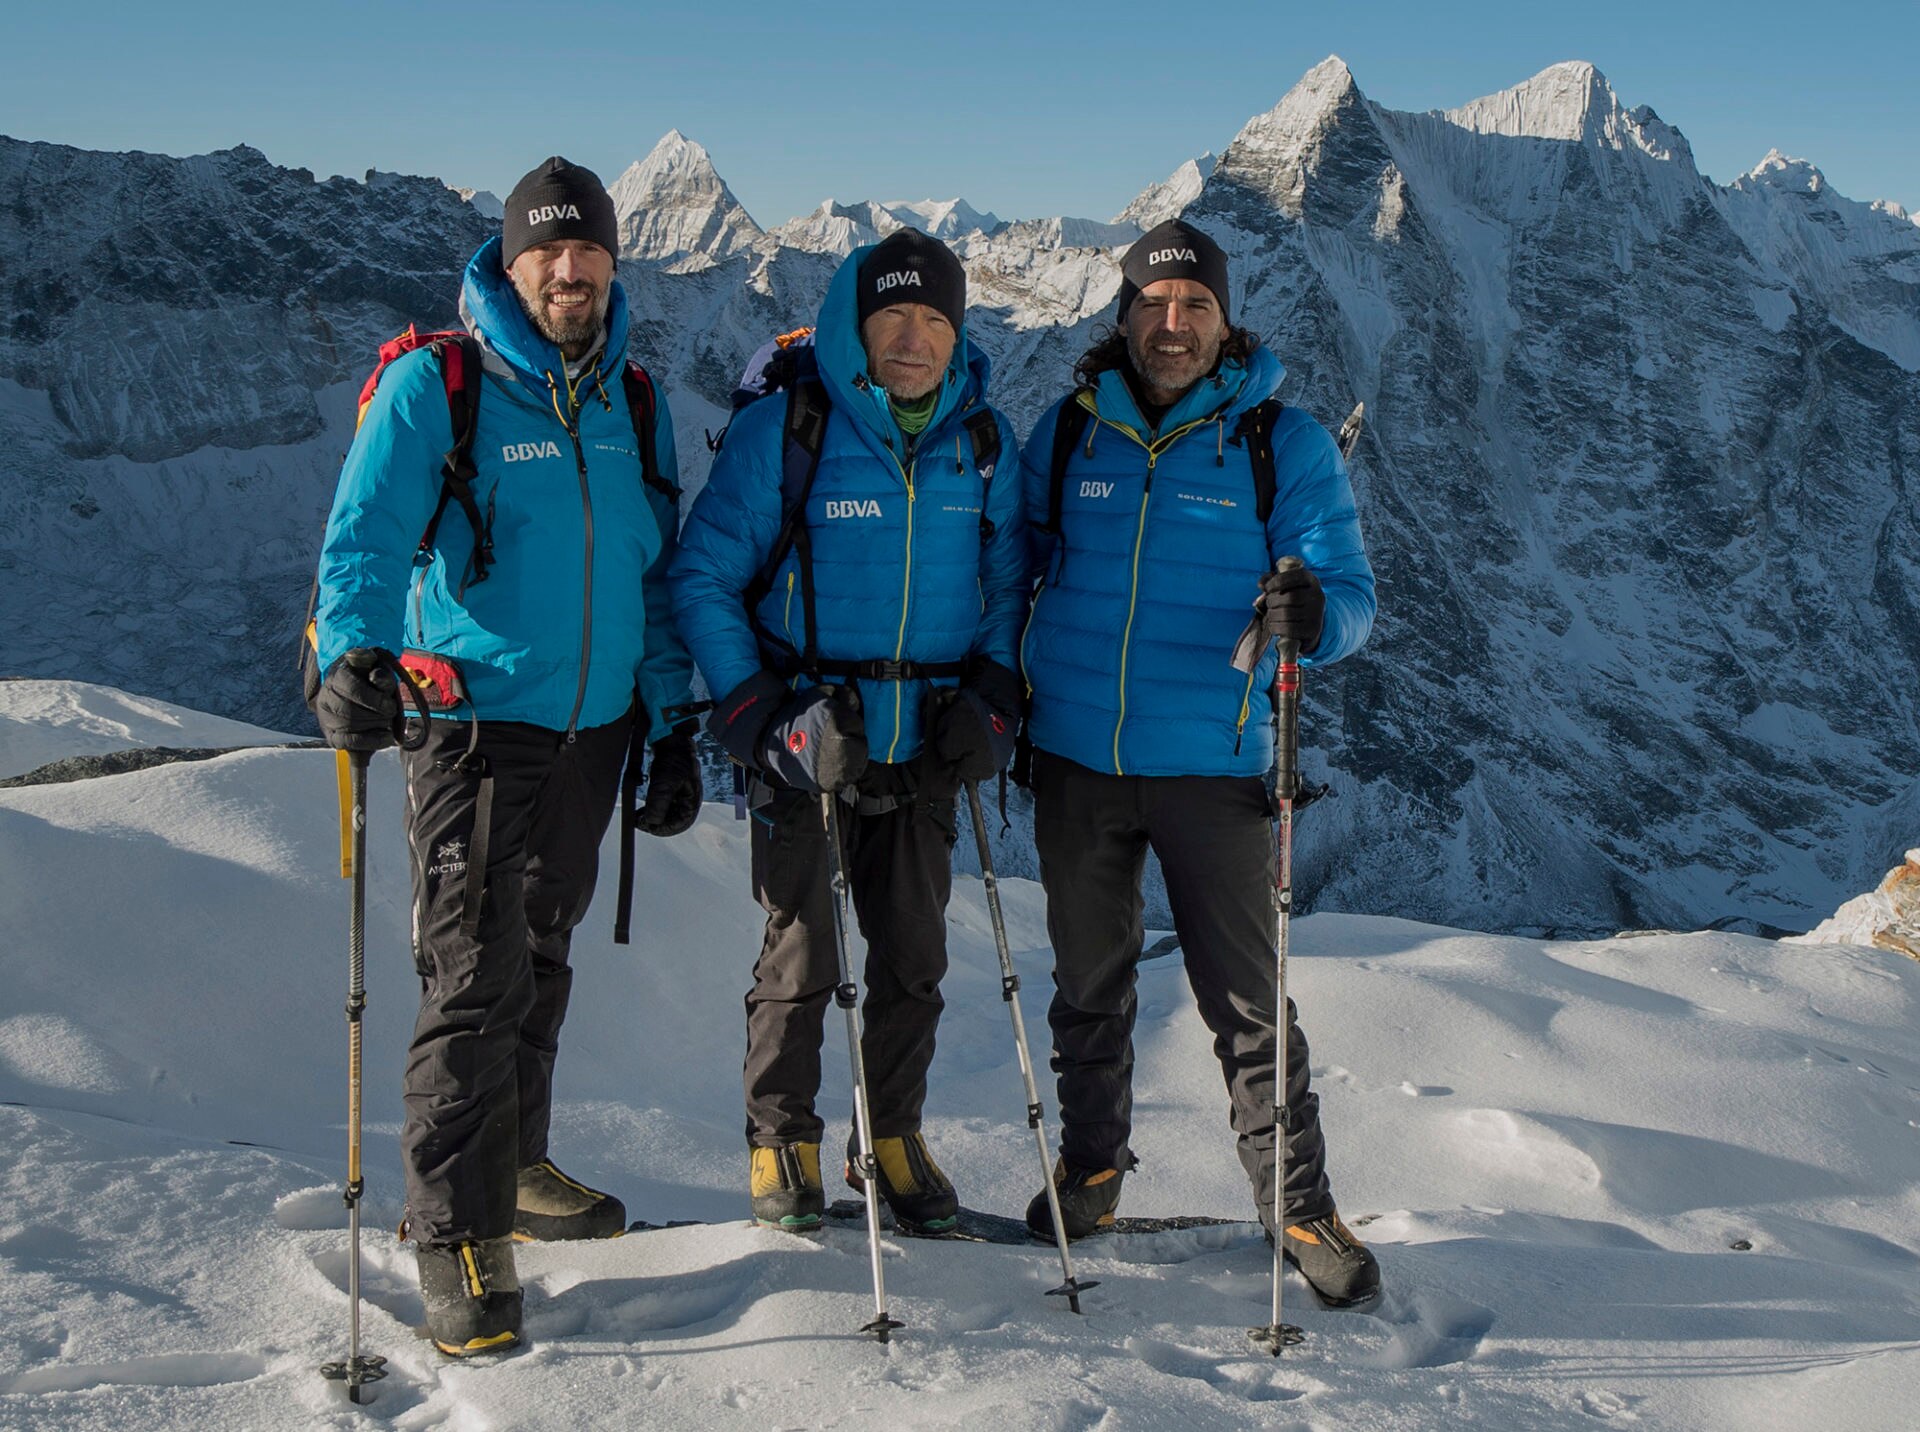 Sito Carcavilla, Carlos Soria y Carlos Martínez en la máxima cota alcanzada en el Island Peak a 5.900 m